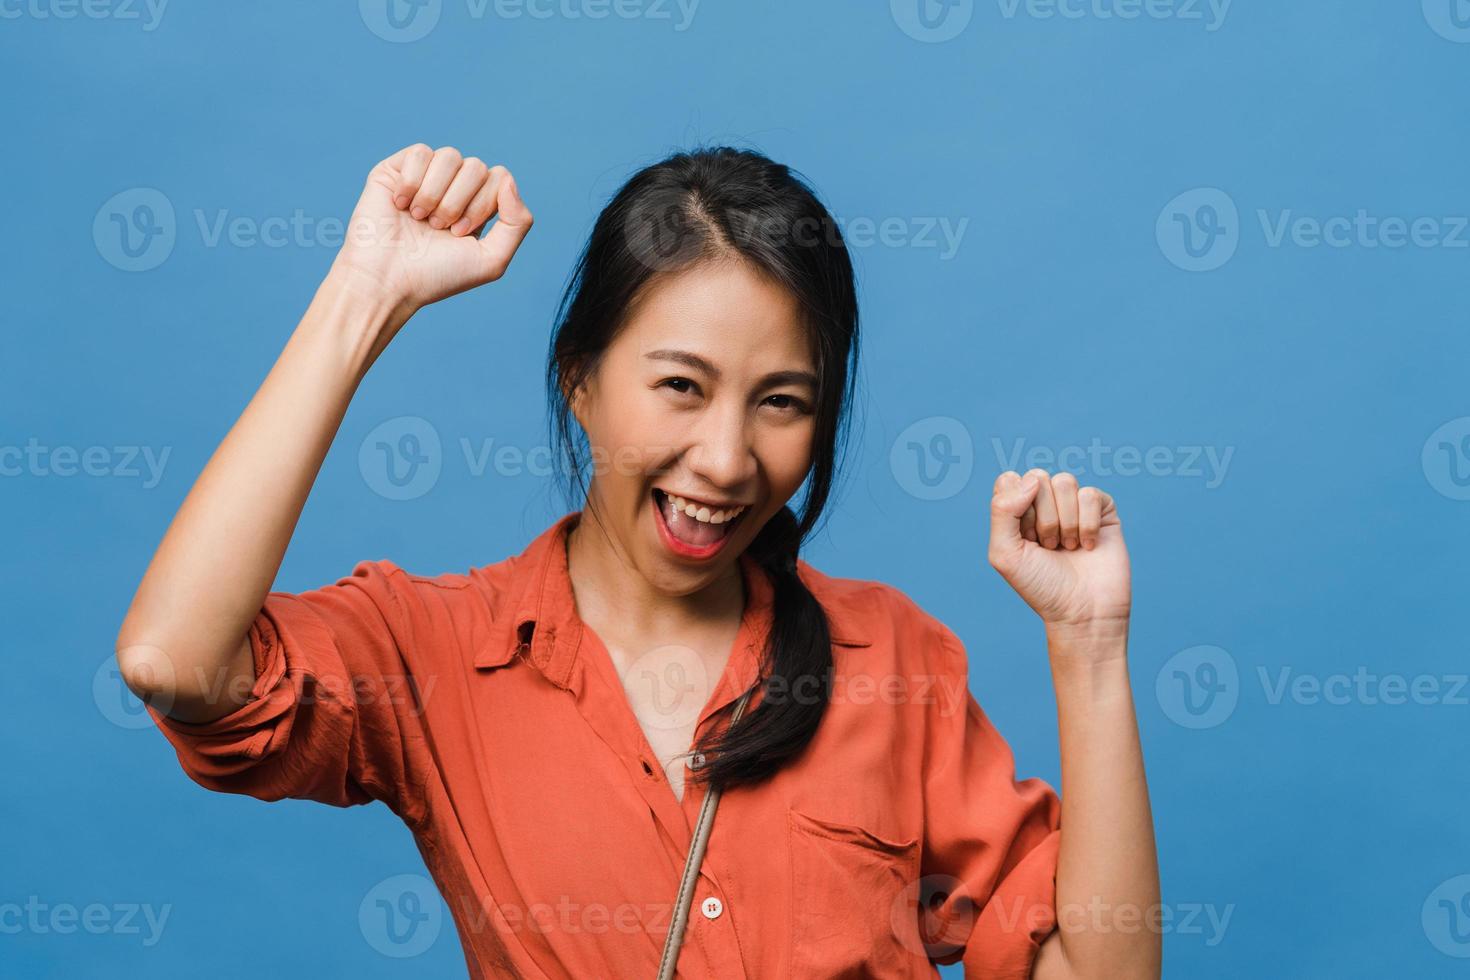 jeune femme asiatique à l'expression positive, joyeuse et excitante, vêtue d'un tissu décontracté et regarde la caméra sur fond bleu. heureuse adorable femme heureuse se réjouit du succès. concept d'expression faciale. photo